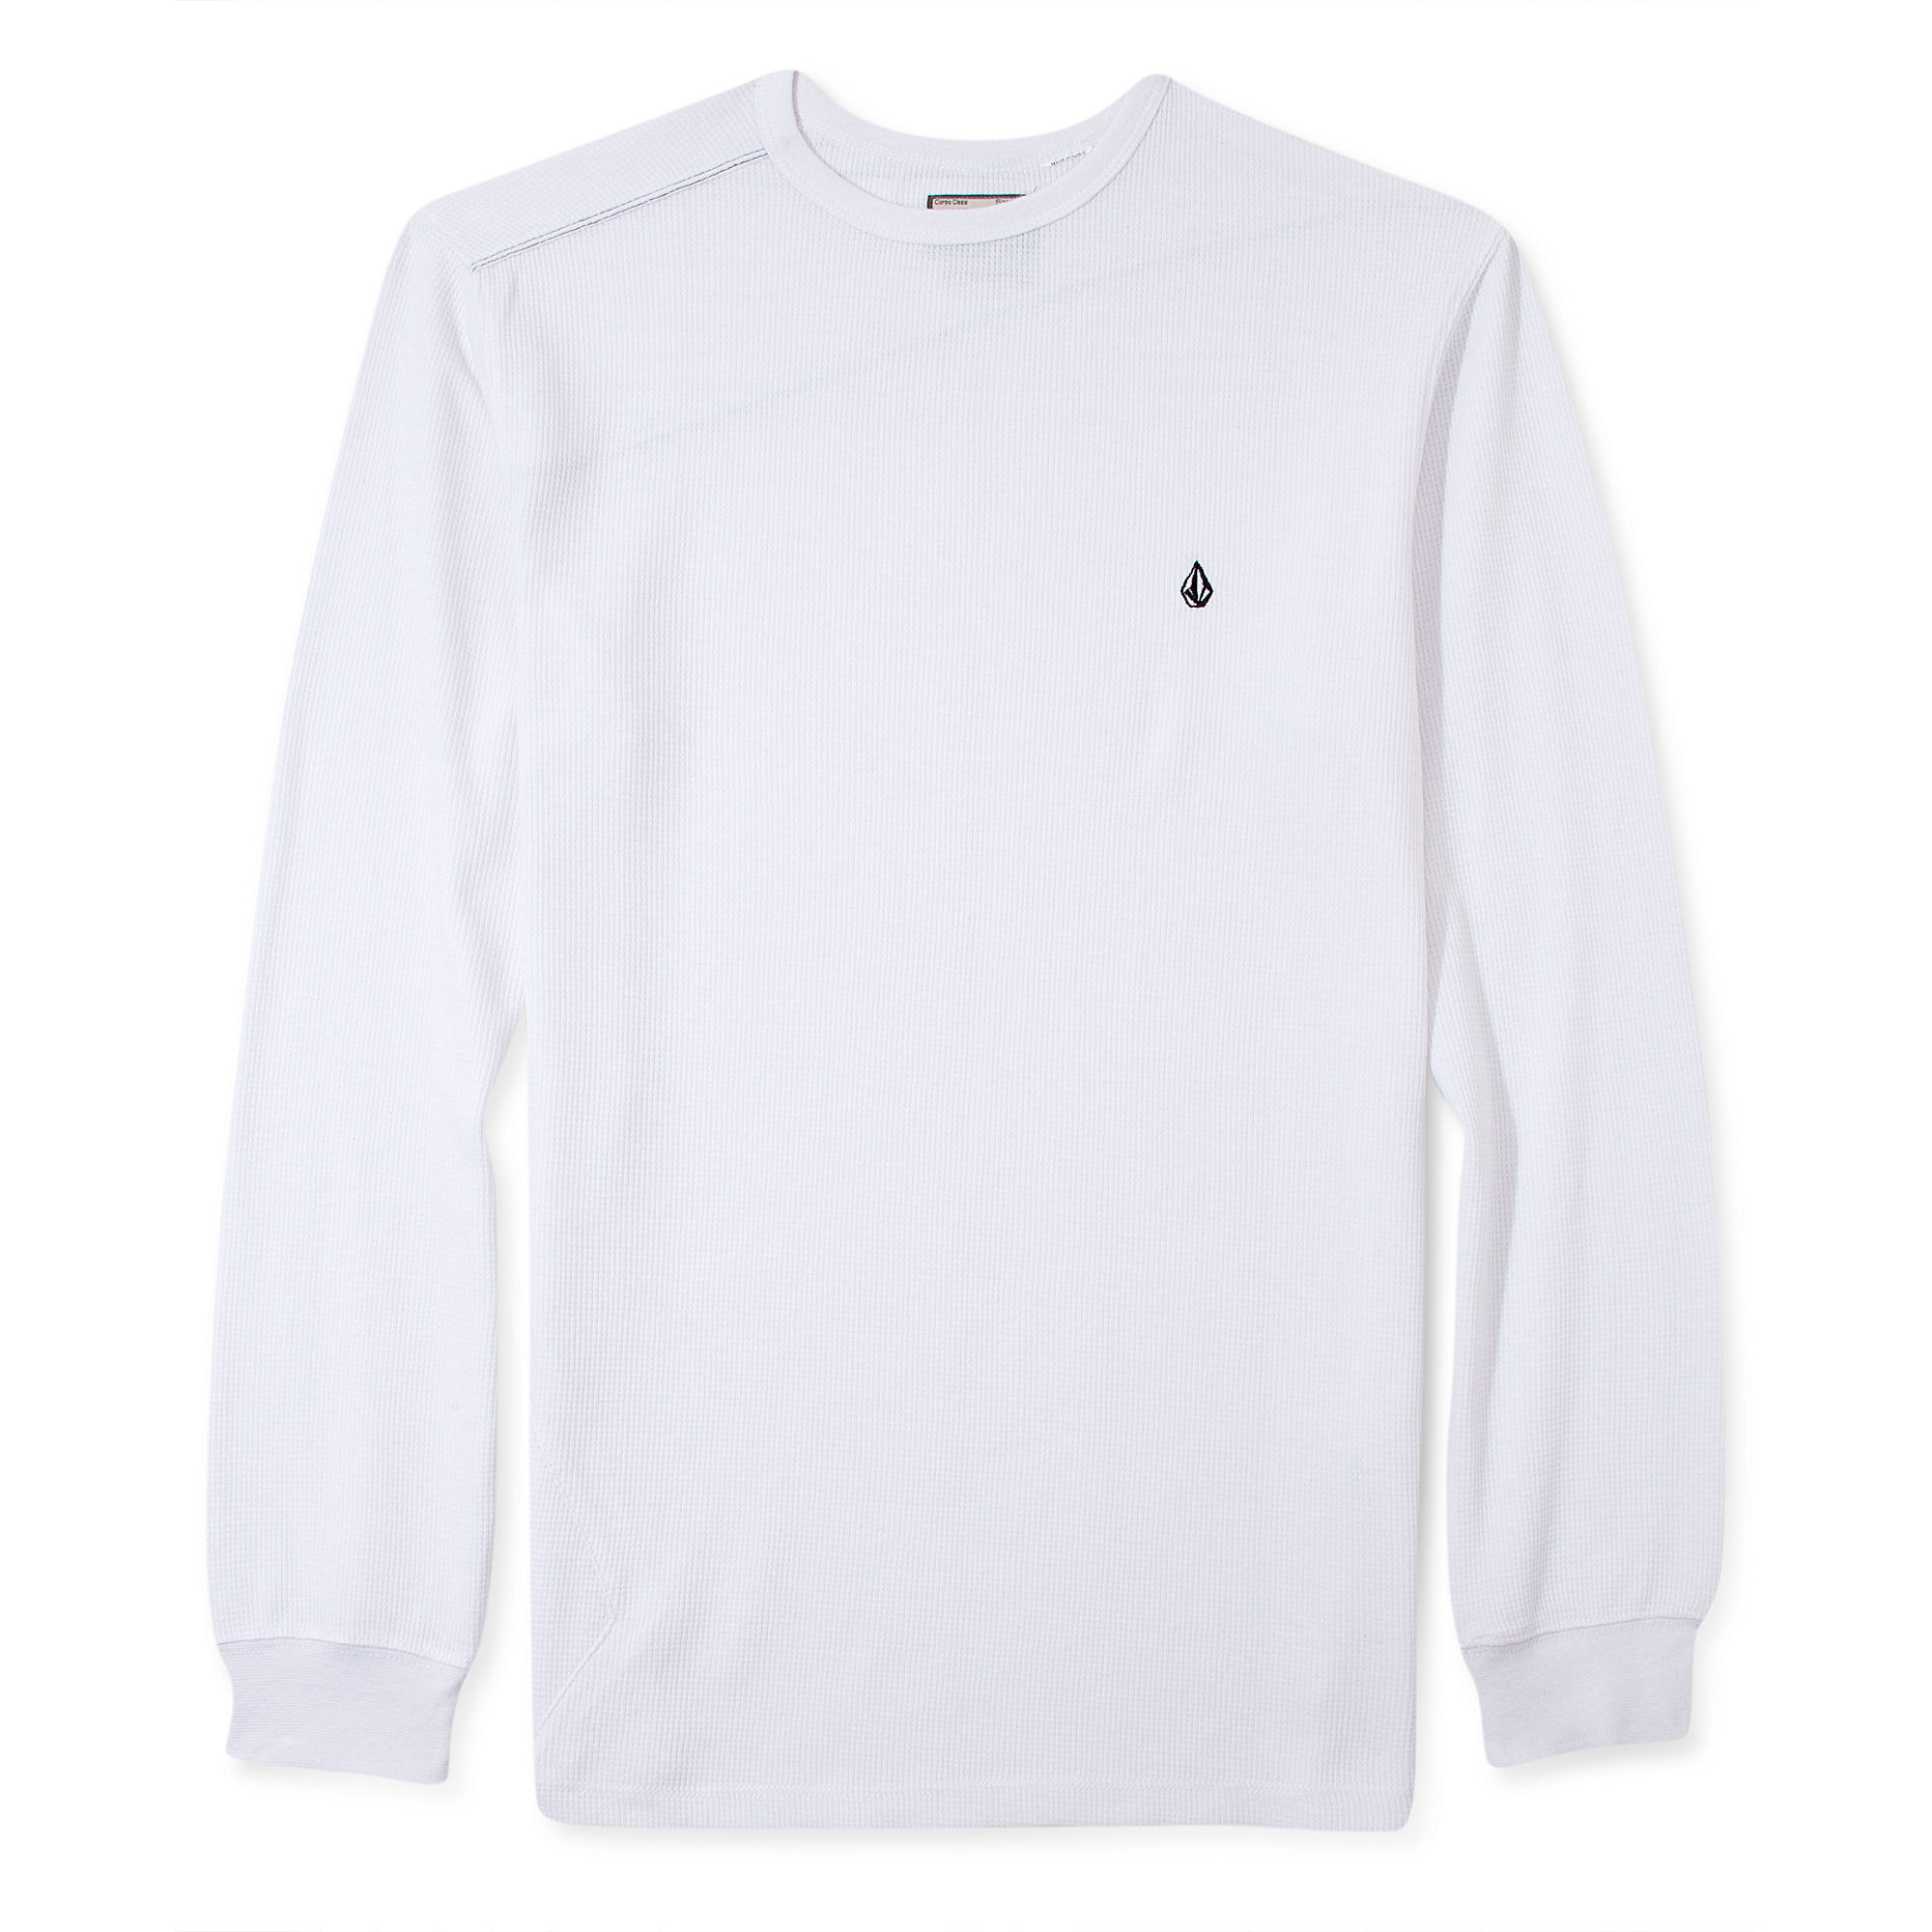 Volcom Schmasic Thermal Long Sleeve Shirt in White for Men - Lyst